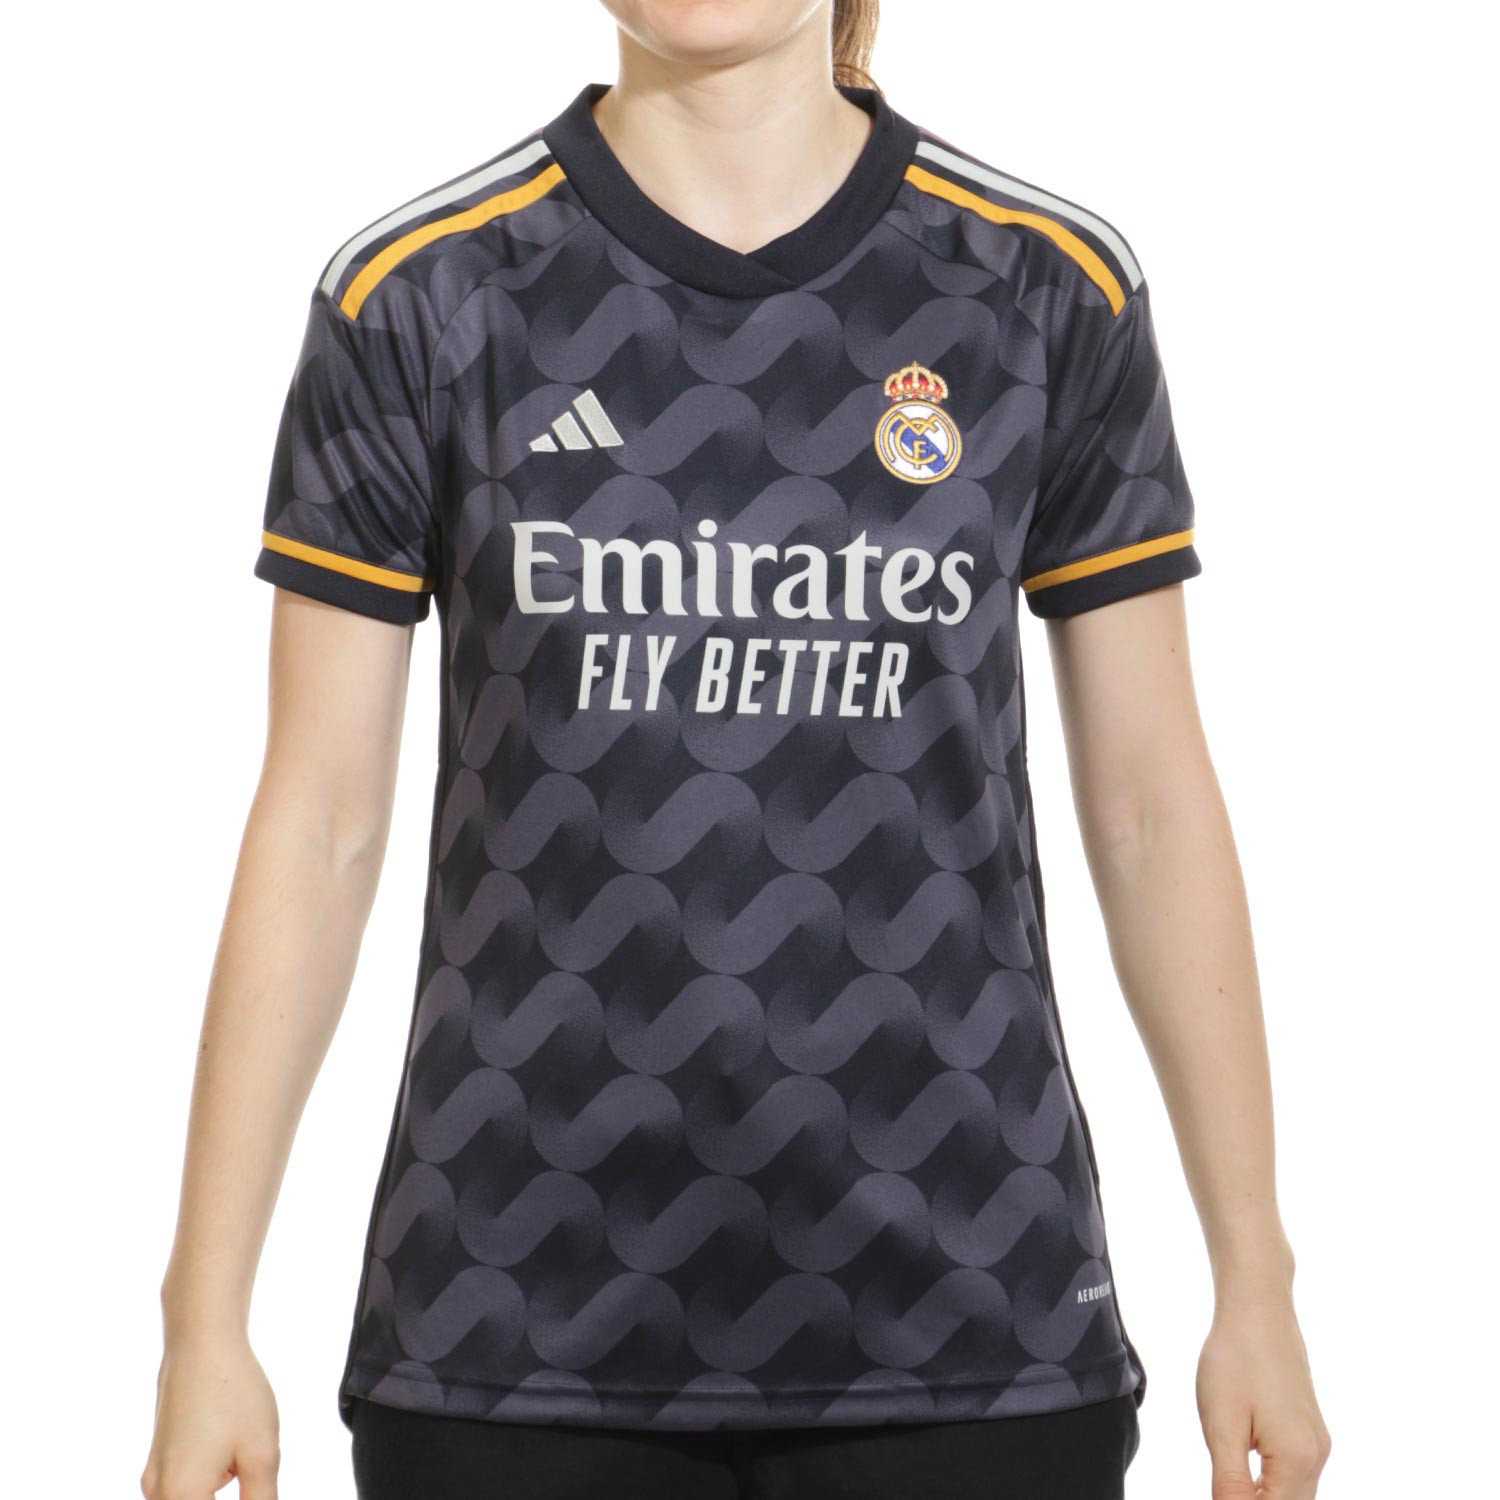 Camiseta adidas primera equipación Real Madrid 23/24 - Mujer con dorsal  Bellingham 5